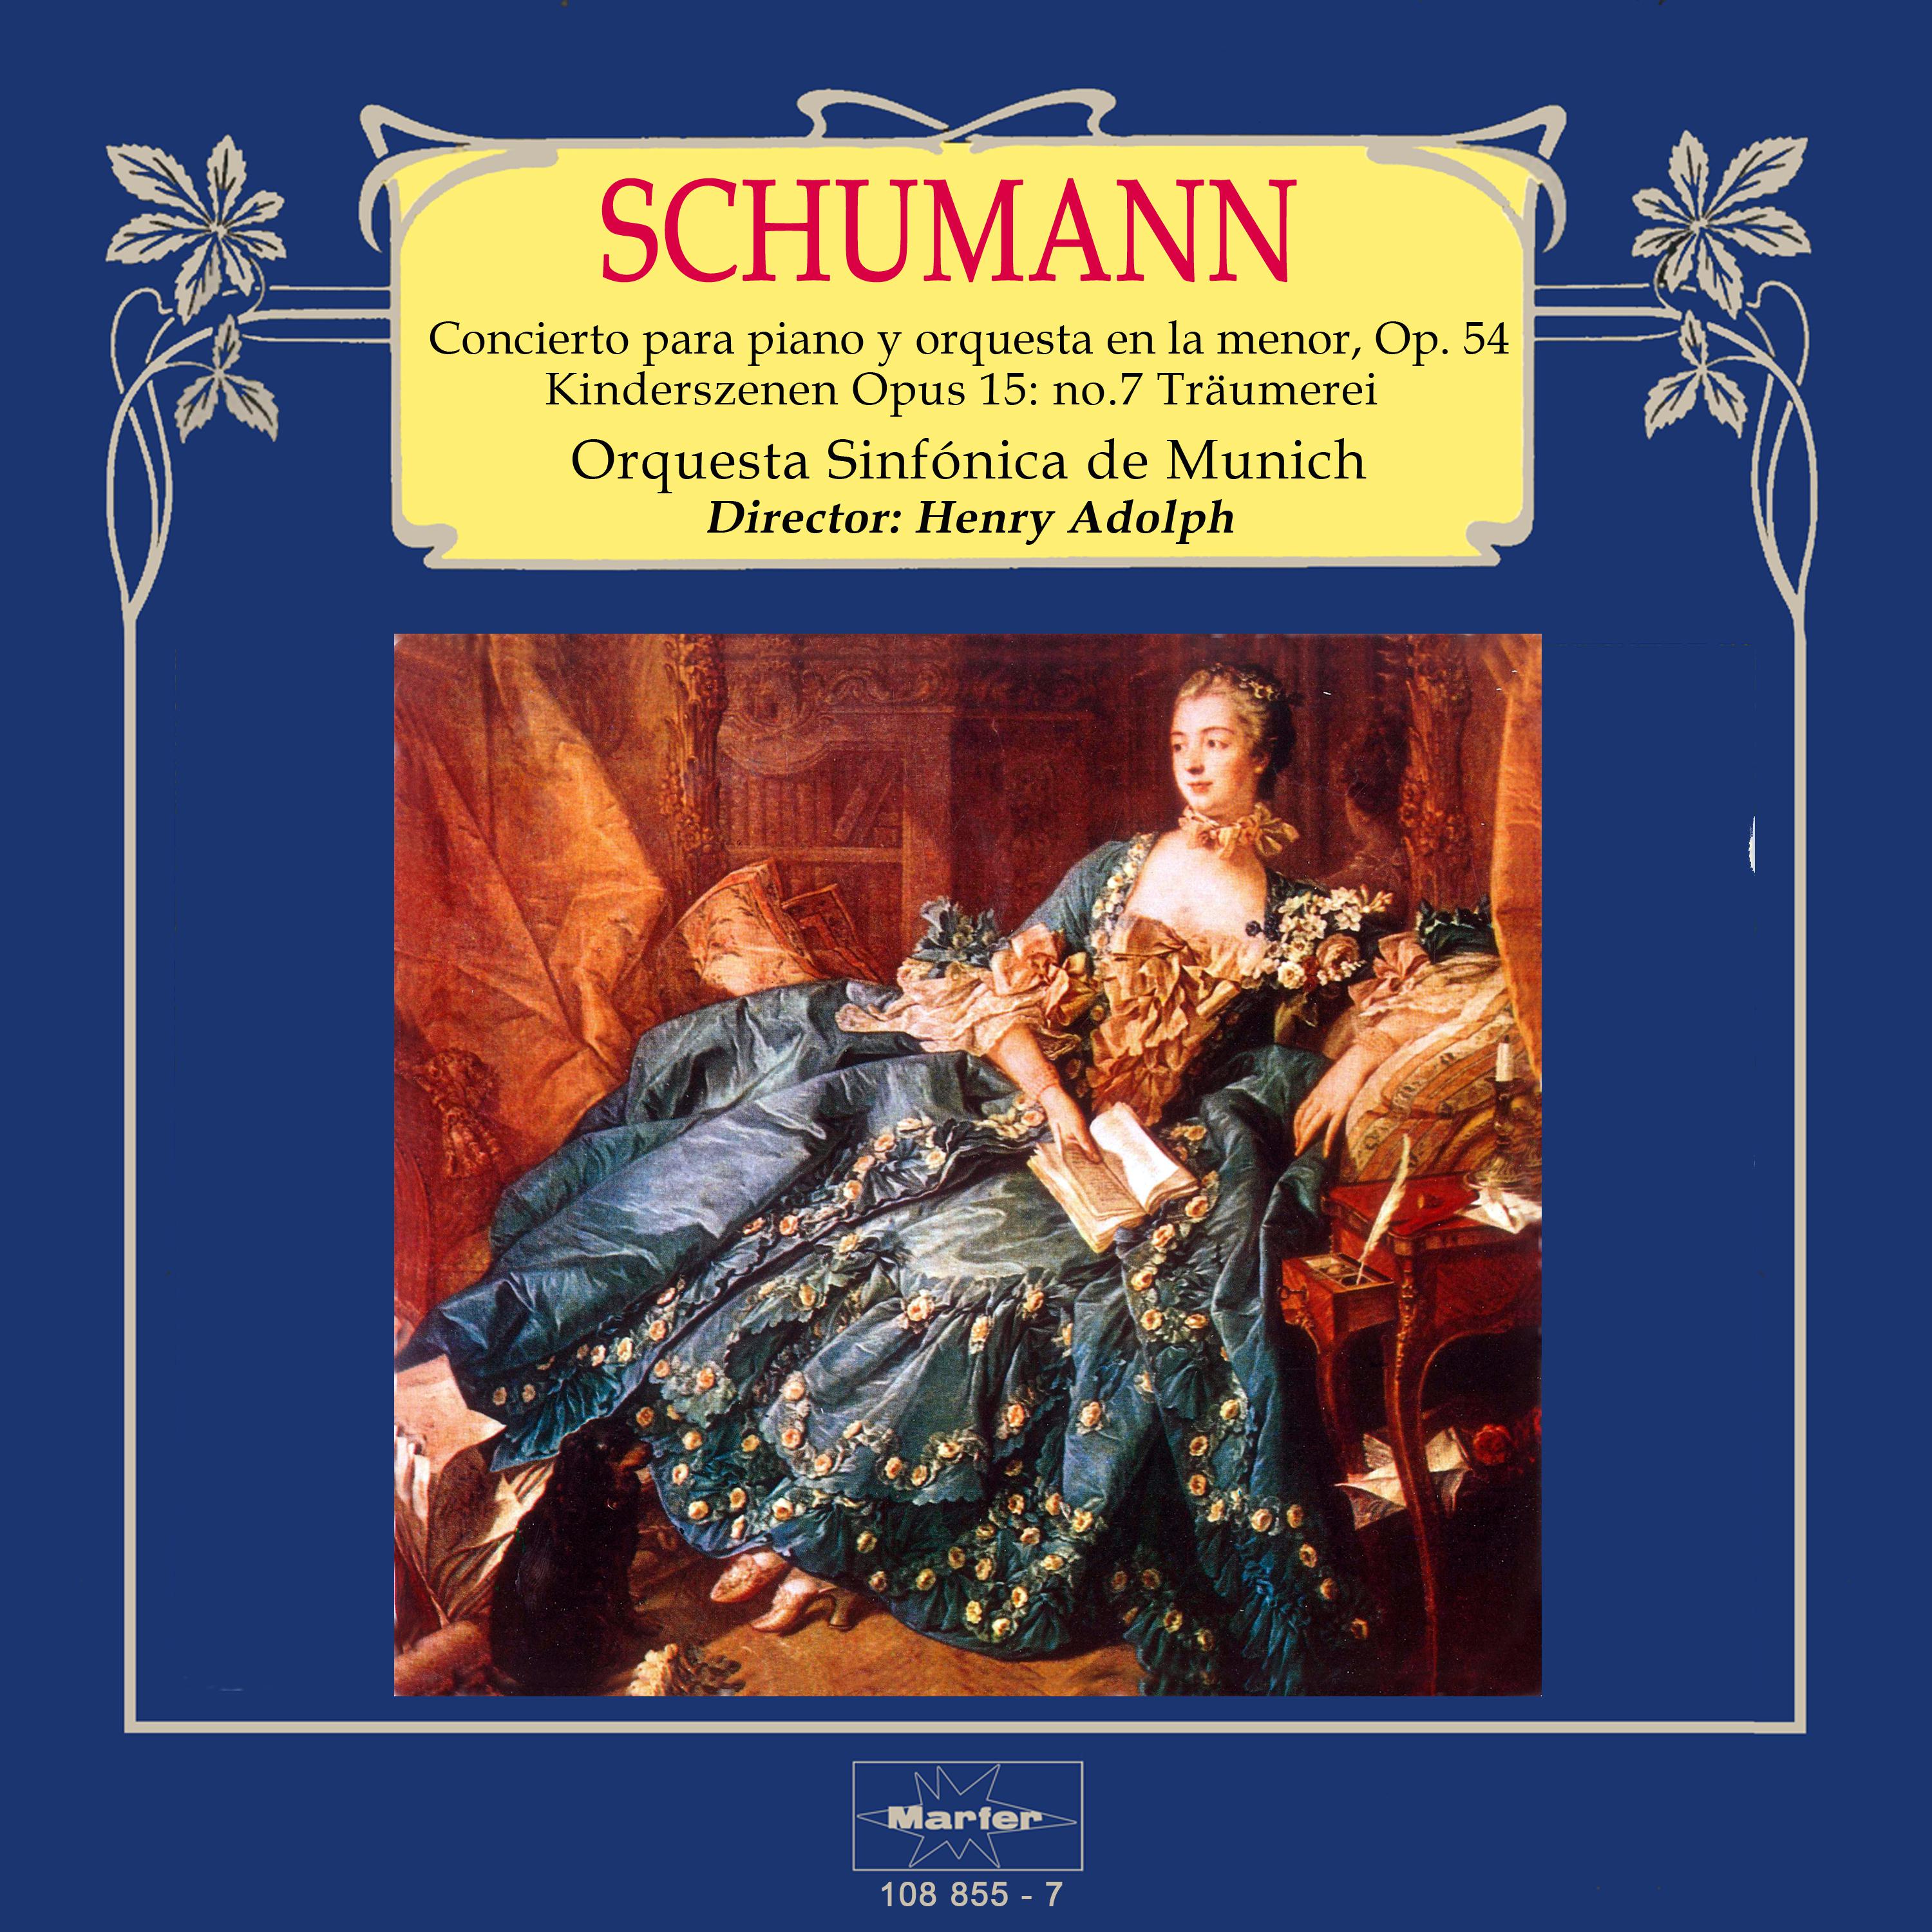 Schumann: Concierto para piano y orquesta in A Minor